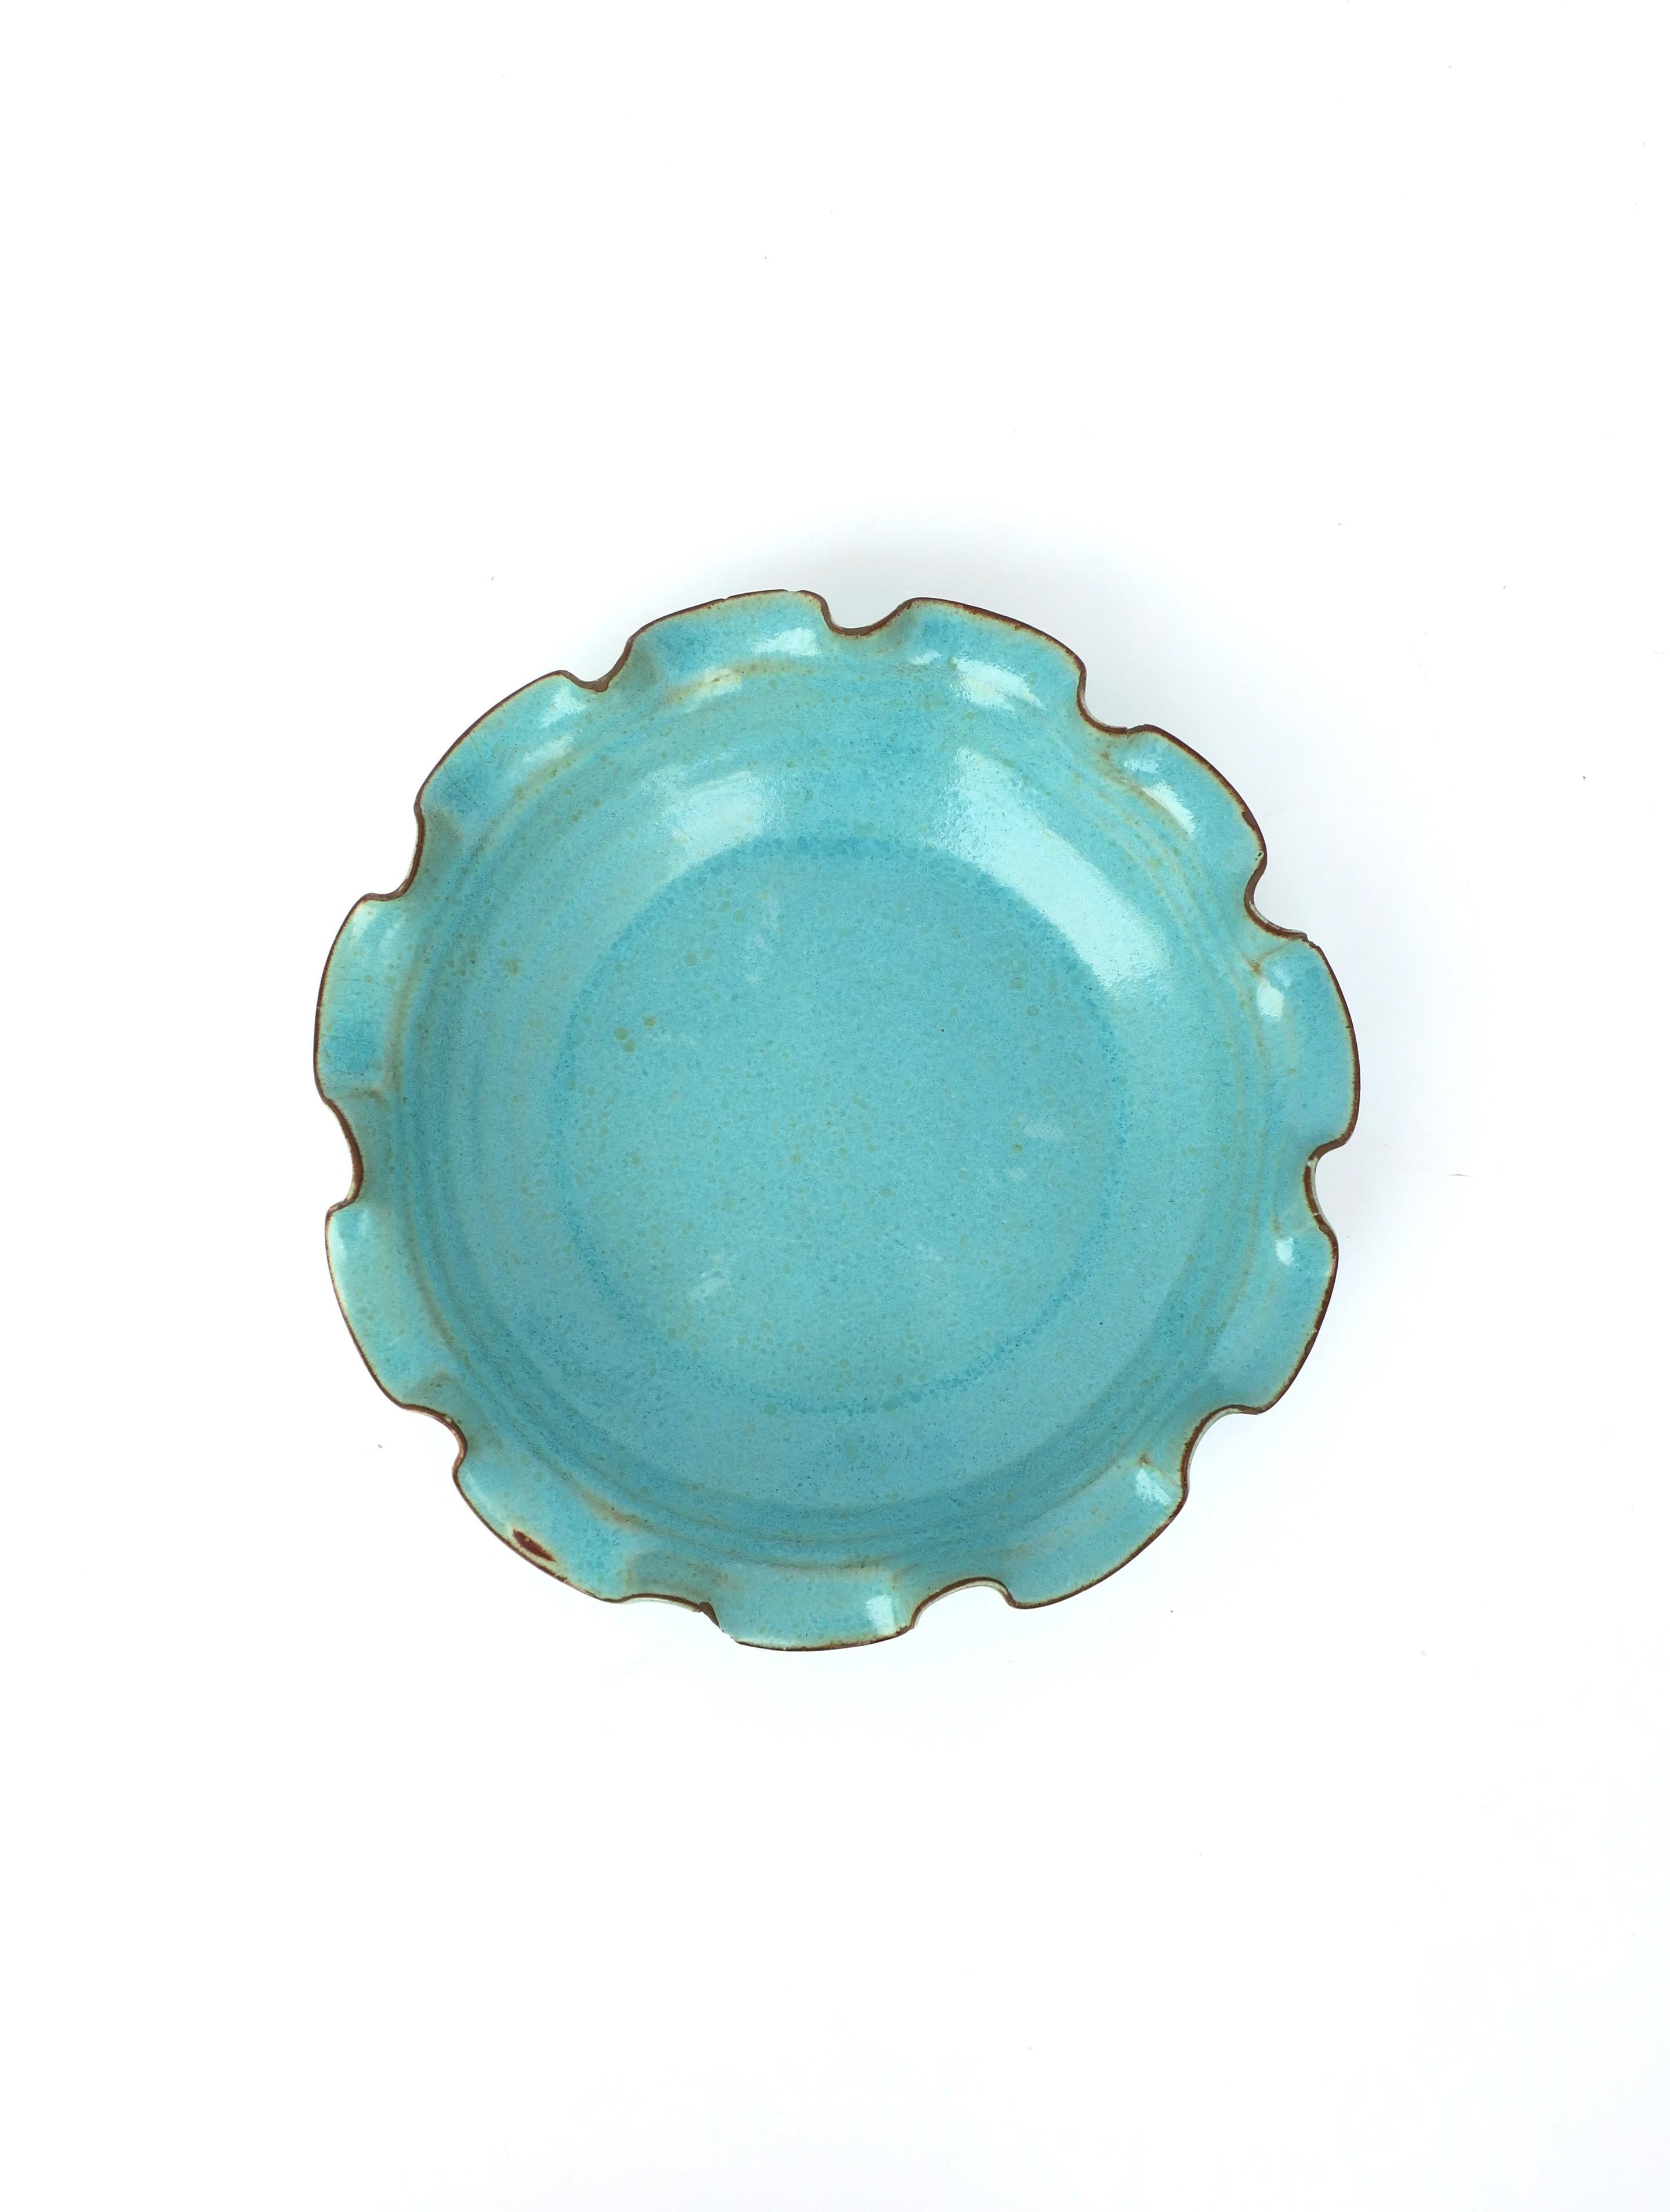 Magnifique bol en poterie bleu ciel ou bleu turquoise avec un bord volant. Idéal comme pièce autonome, comme fourre-tout ou comme bol de service. Dimensions : 9,88